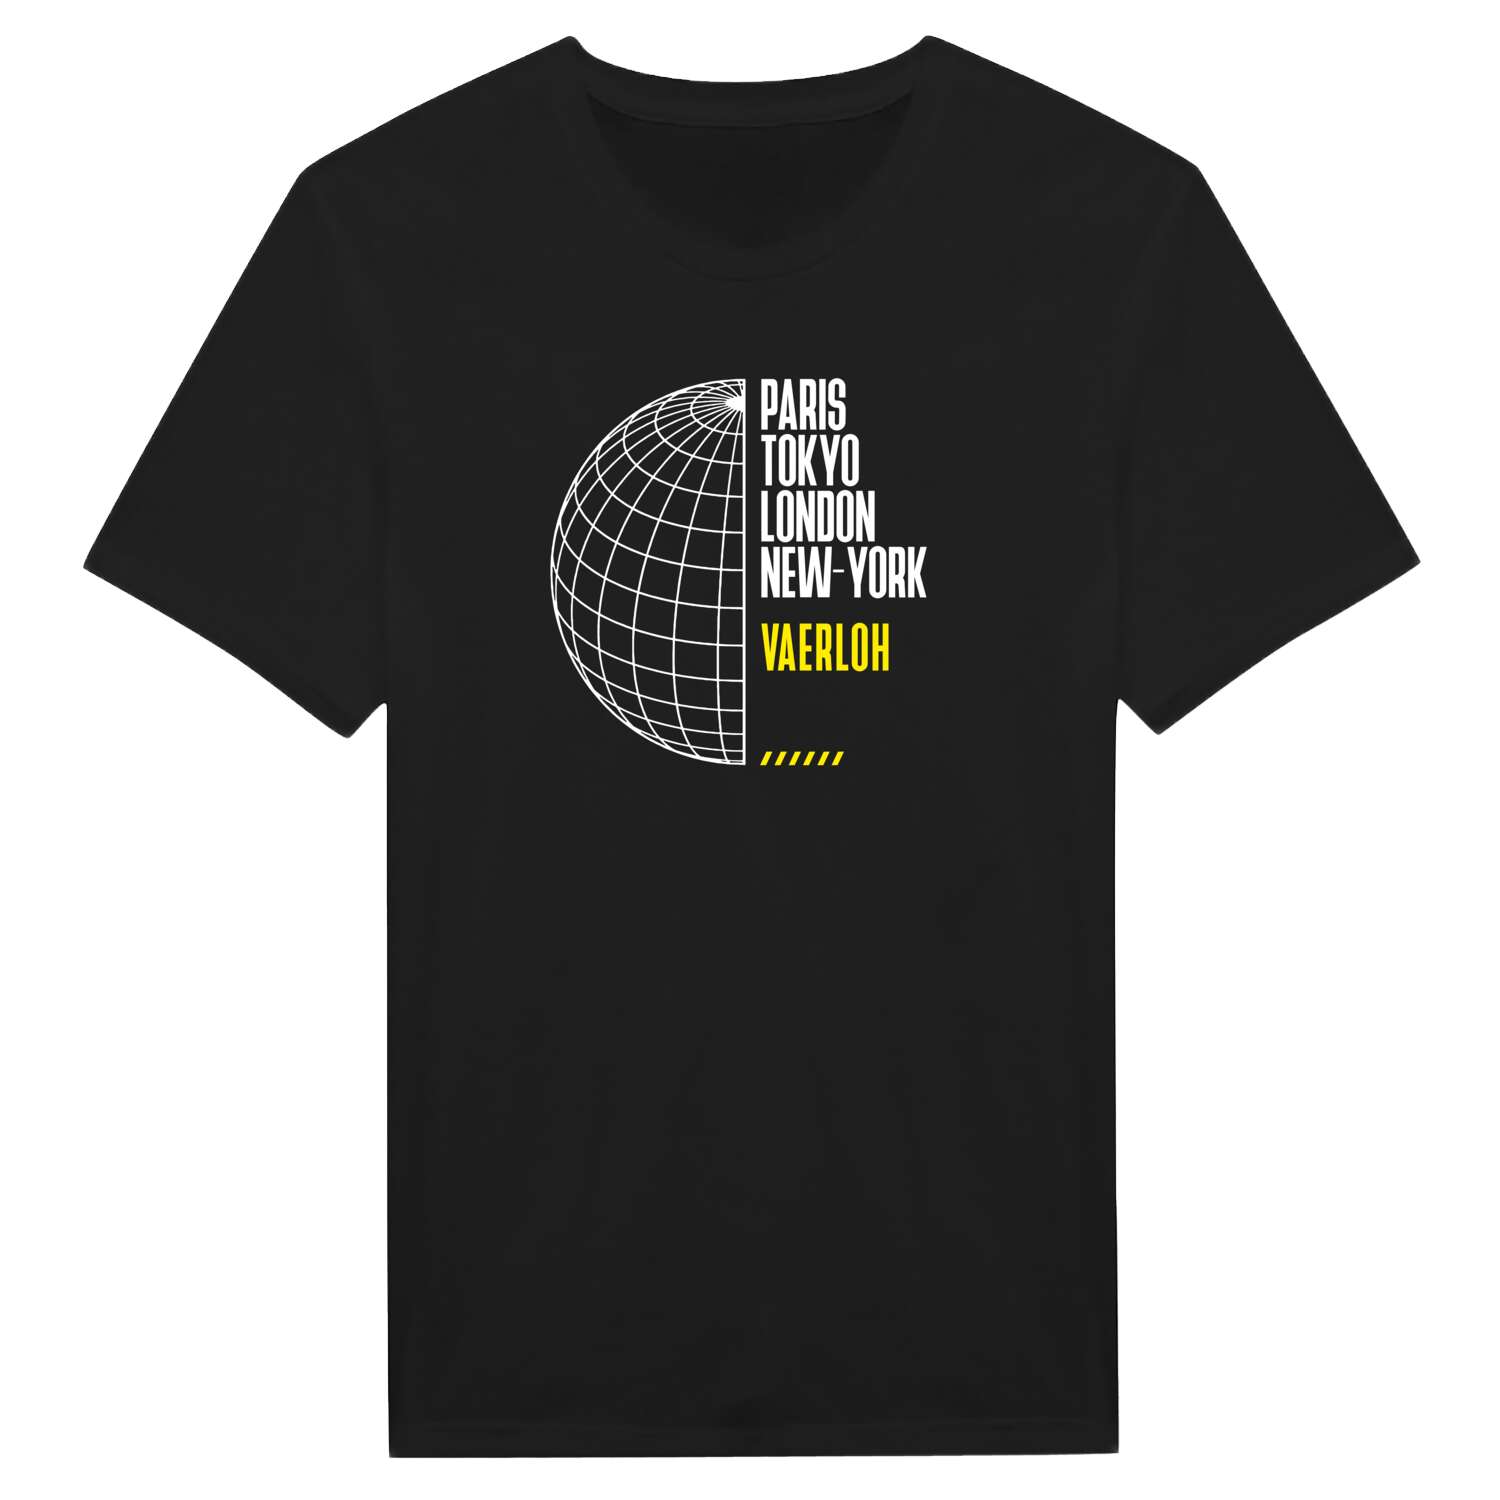 Vaerloh T-Shirt »Paris Tokyo London«